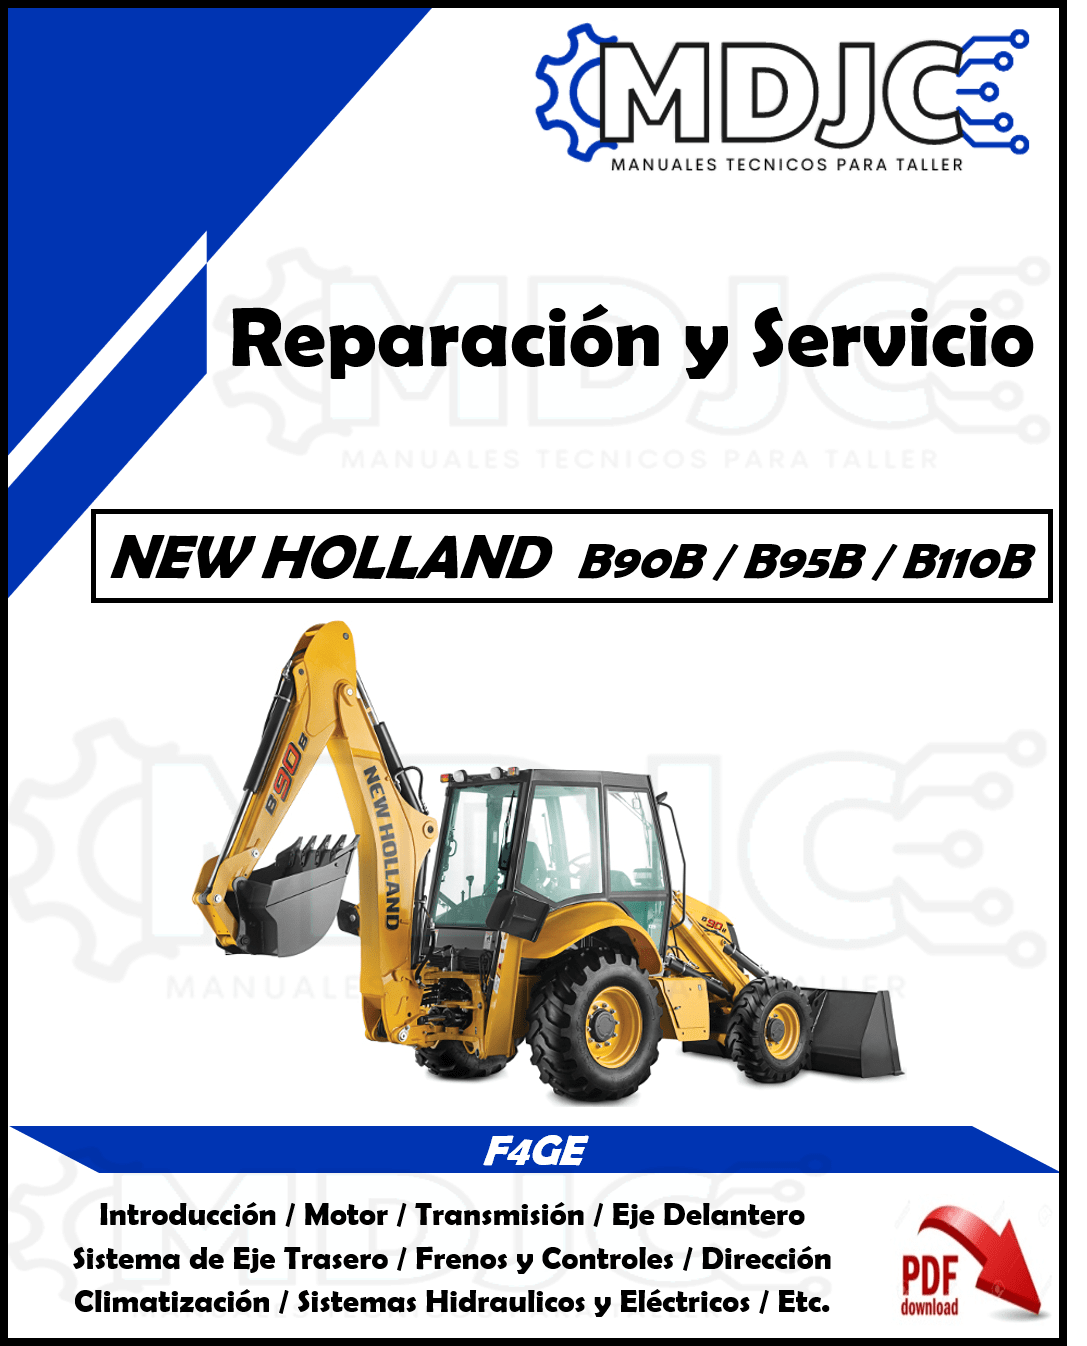 Manual de Taller (Reparación y Servicio) New Holland B90B / B95B / B110B